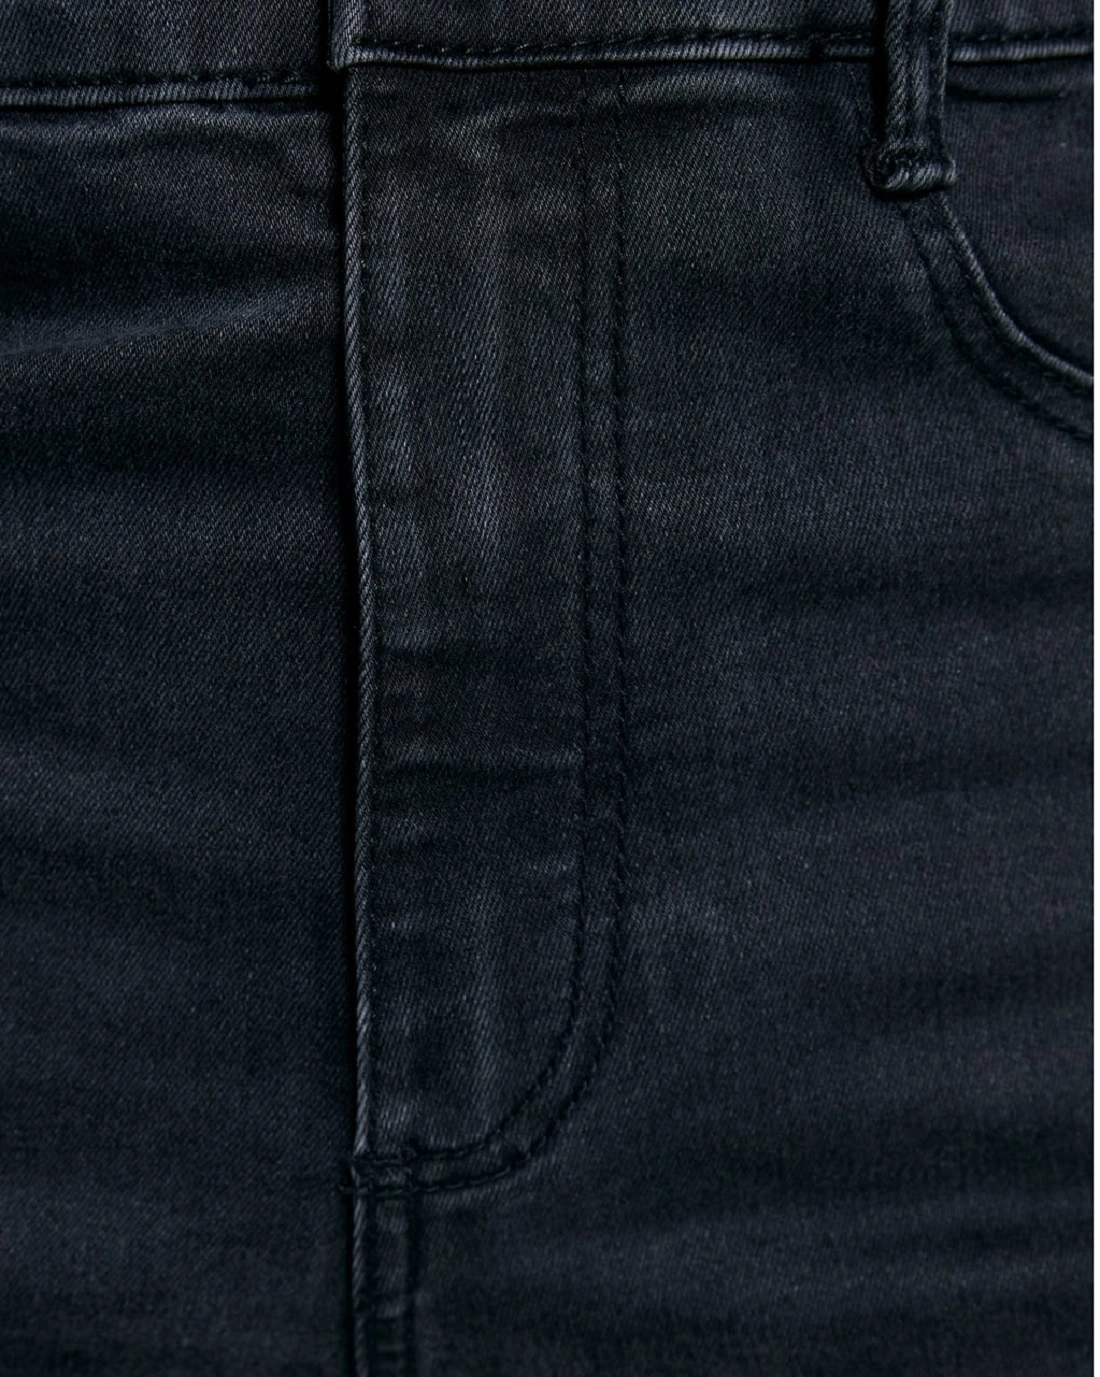 Malachi Women's High Waist  Skinny Jeans-Dark Grey-24-5